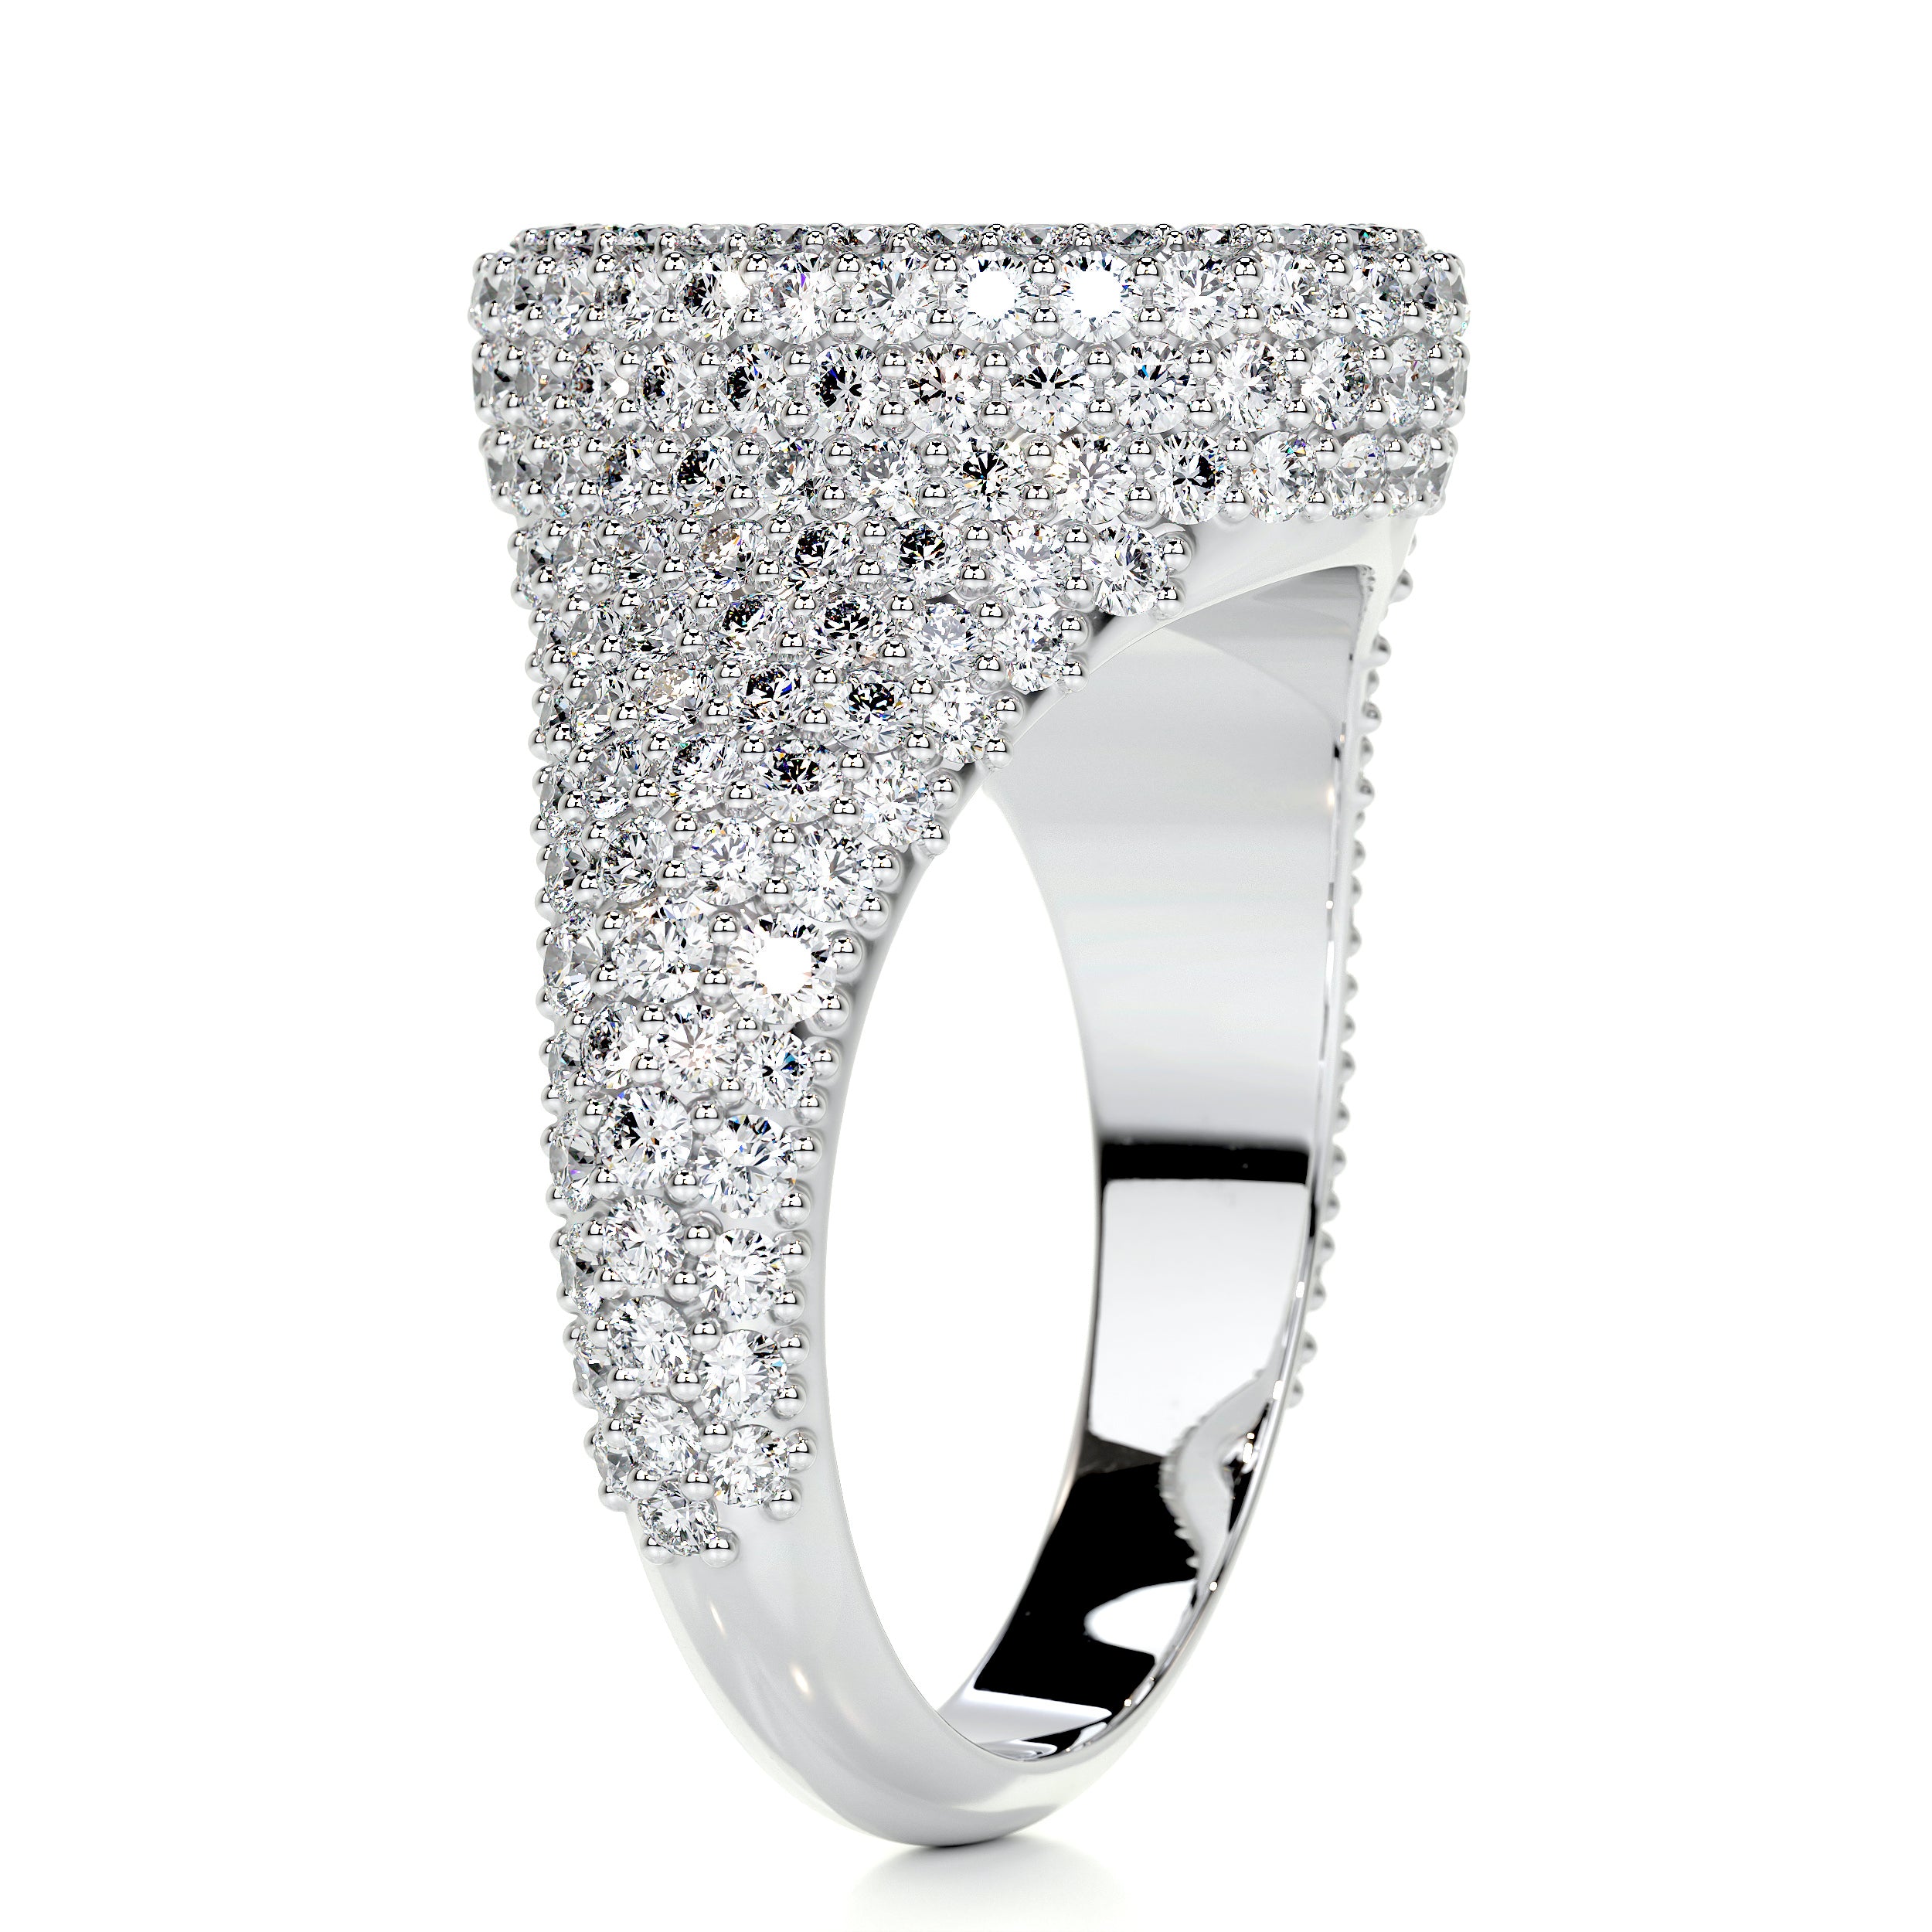 Angelina Wedding Ring   (1.4 Carat) -18K White Gold